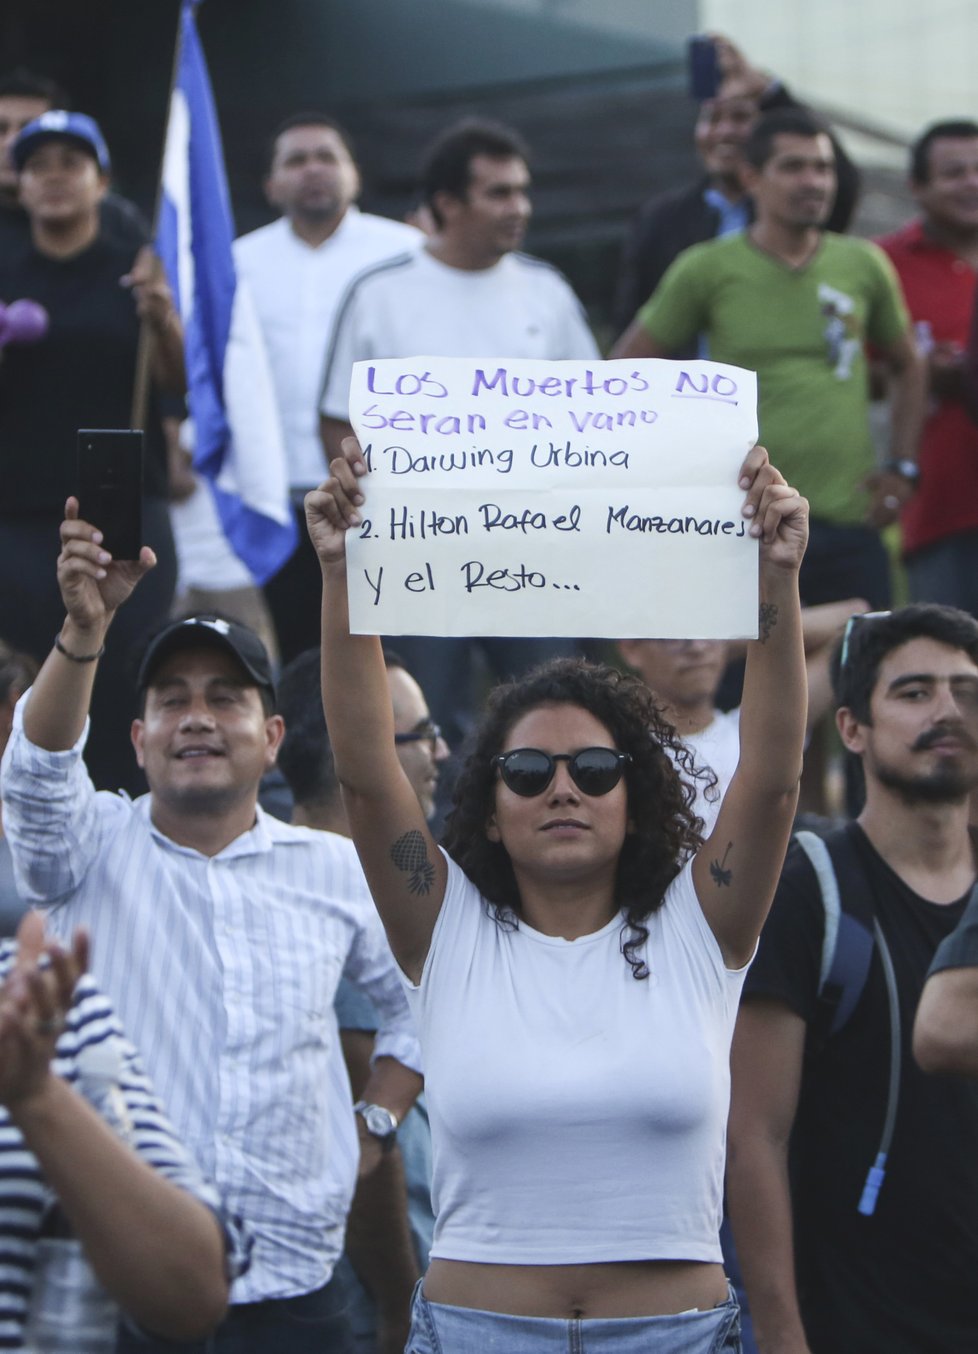 Protesty v Nikaragui si vyžádaly desítky obětí.